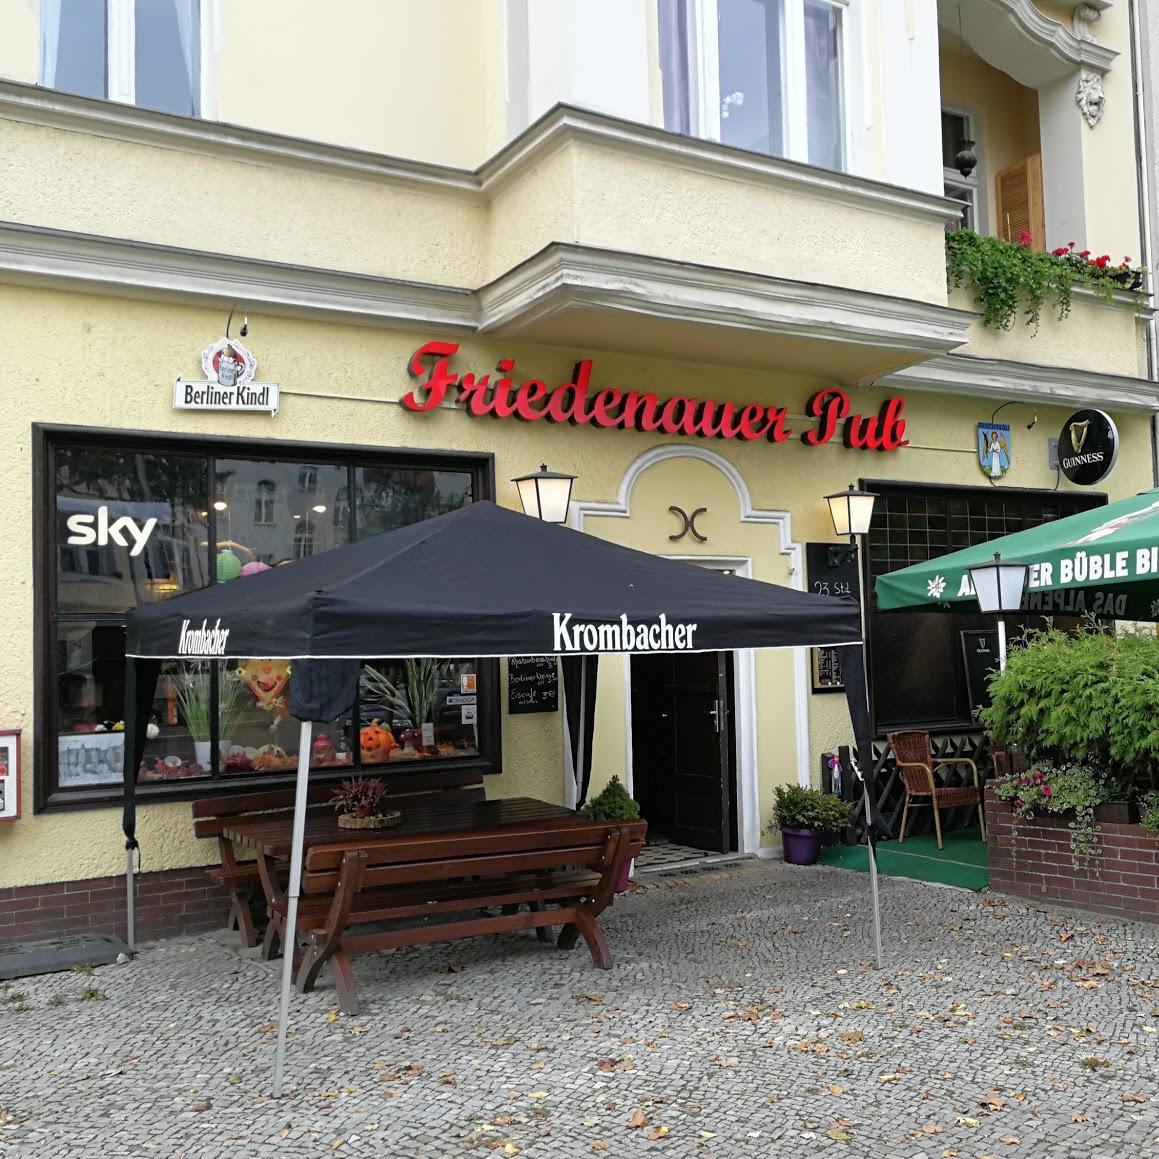 Restaurant "Friedenauer Pub" in Berlin